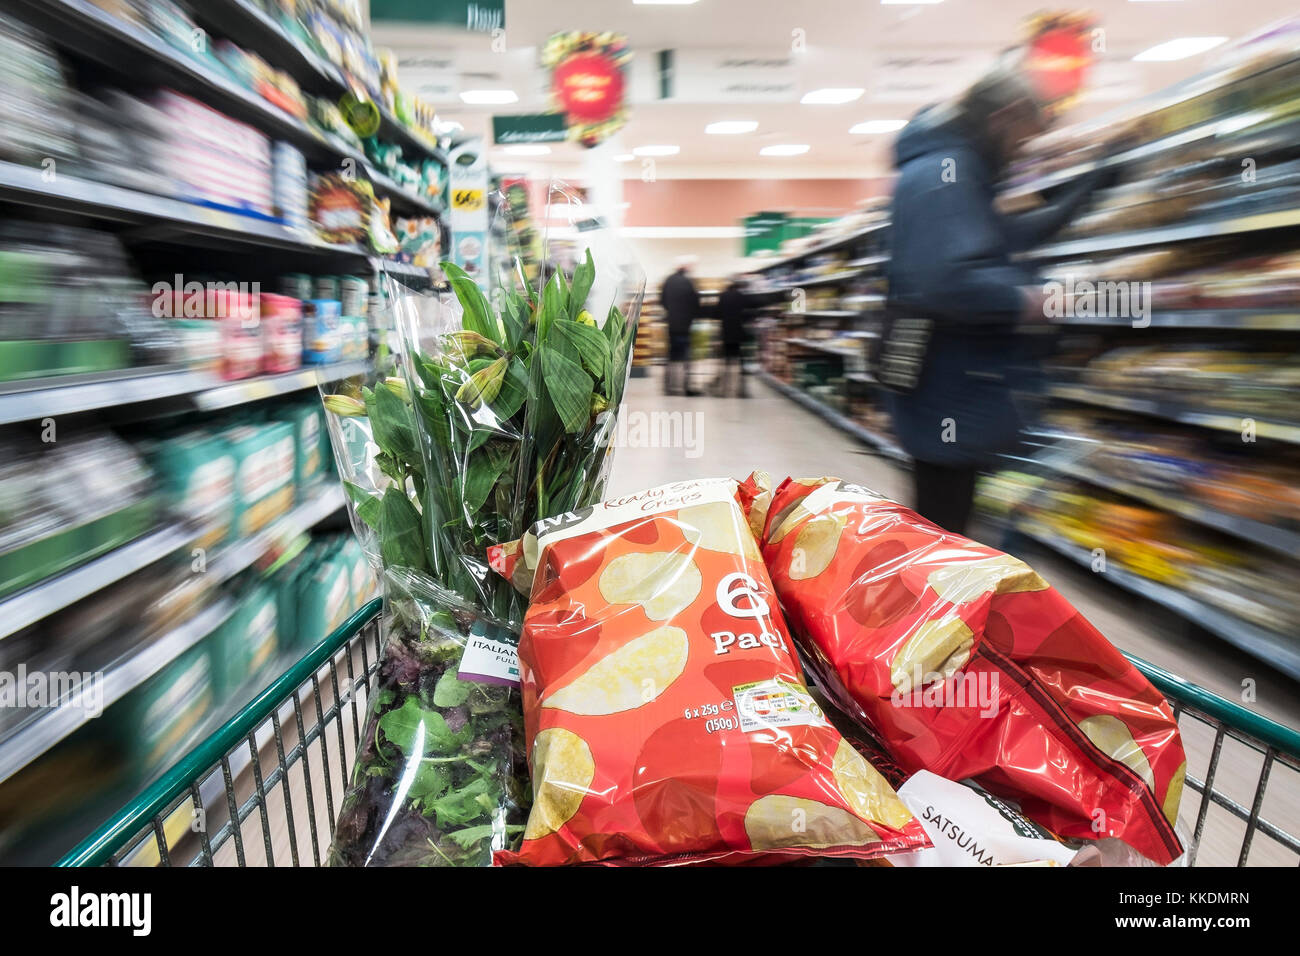 Einen Einkaufswagen voller Waren nach unten gedrückt wird, um einen Gang in einem Supermarkt. Stockfoto